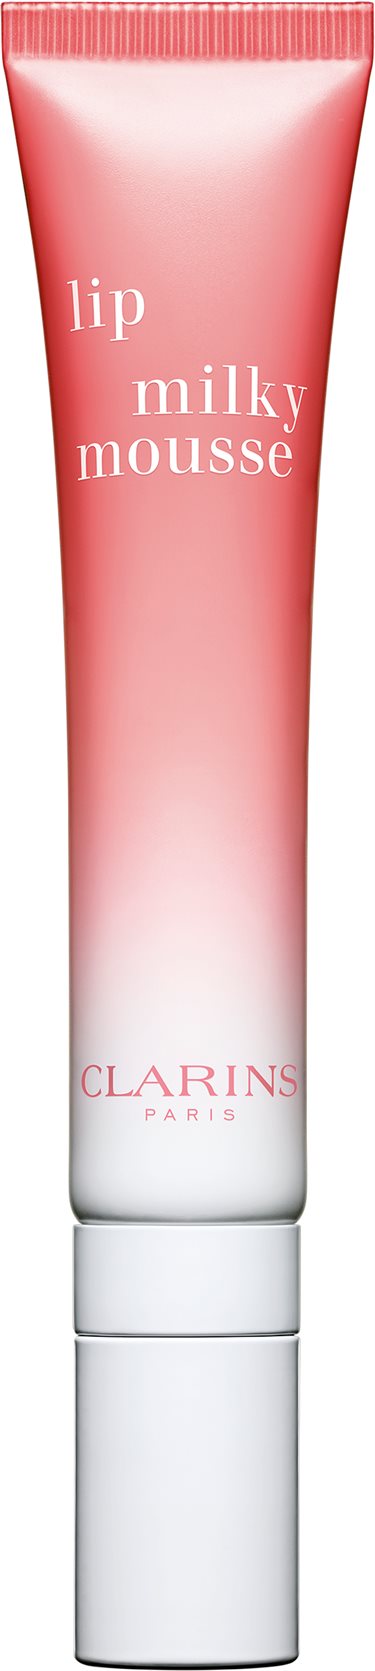 Clarins Lip Milky Musse 03 Pink 10 ml.